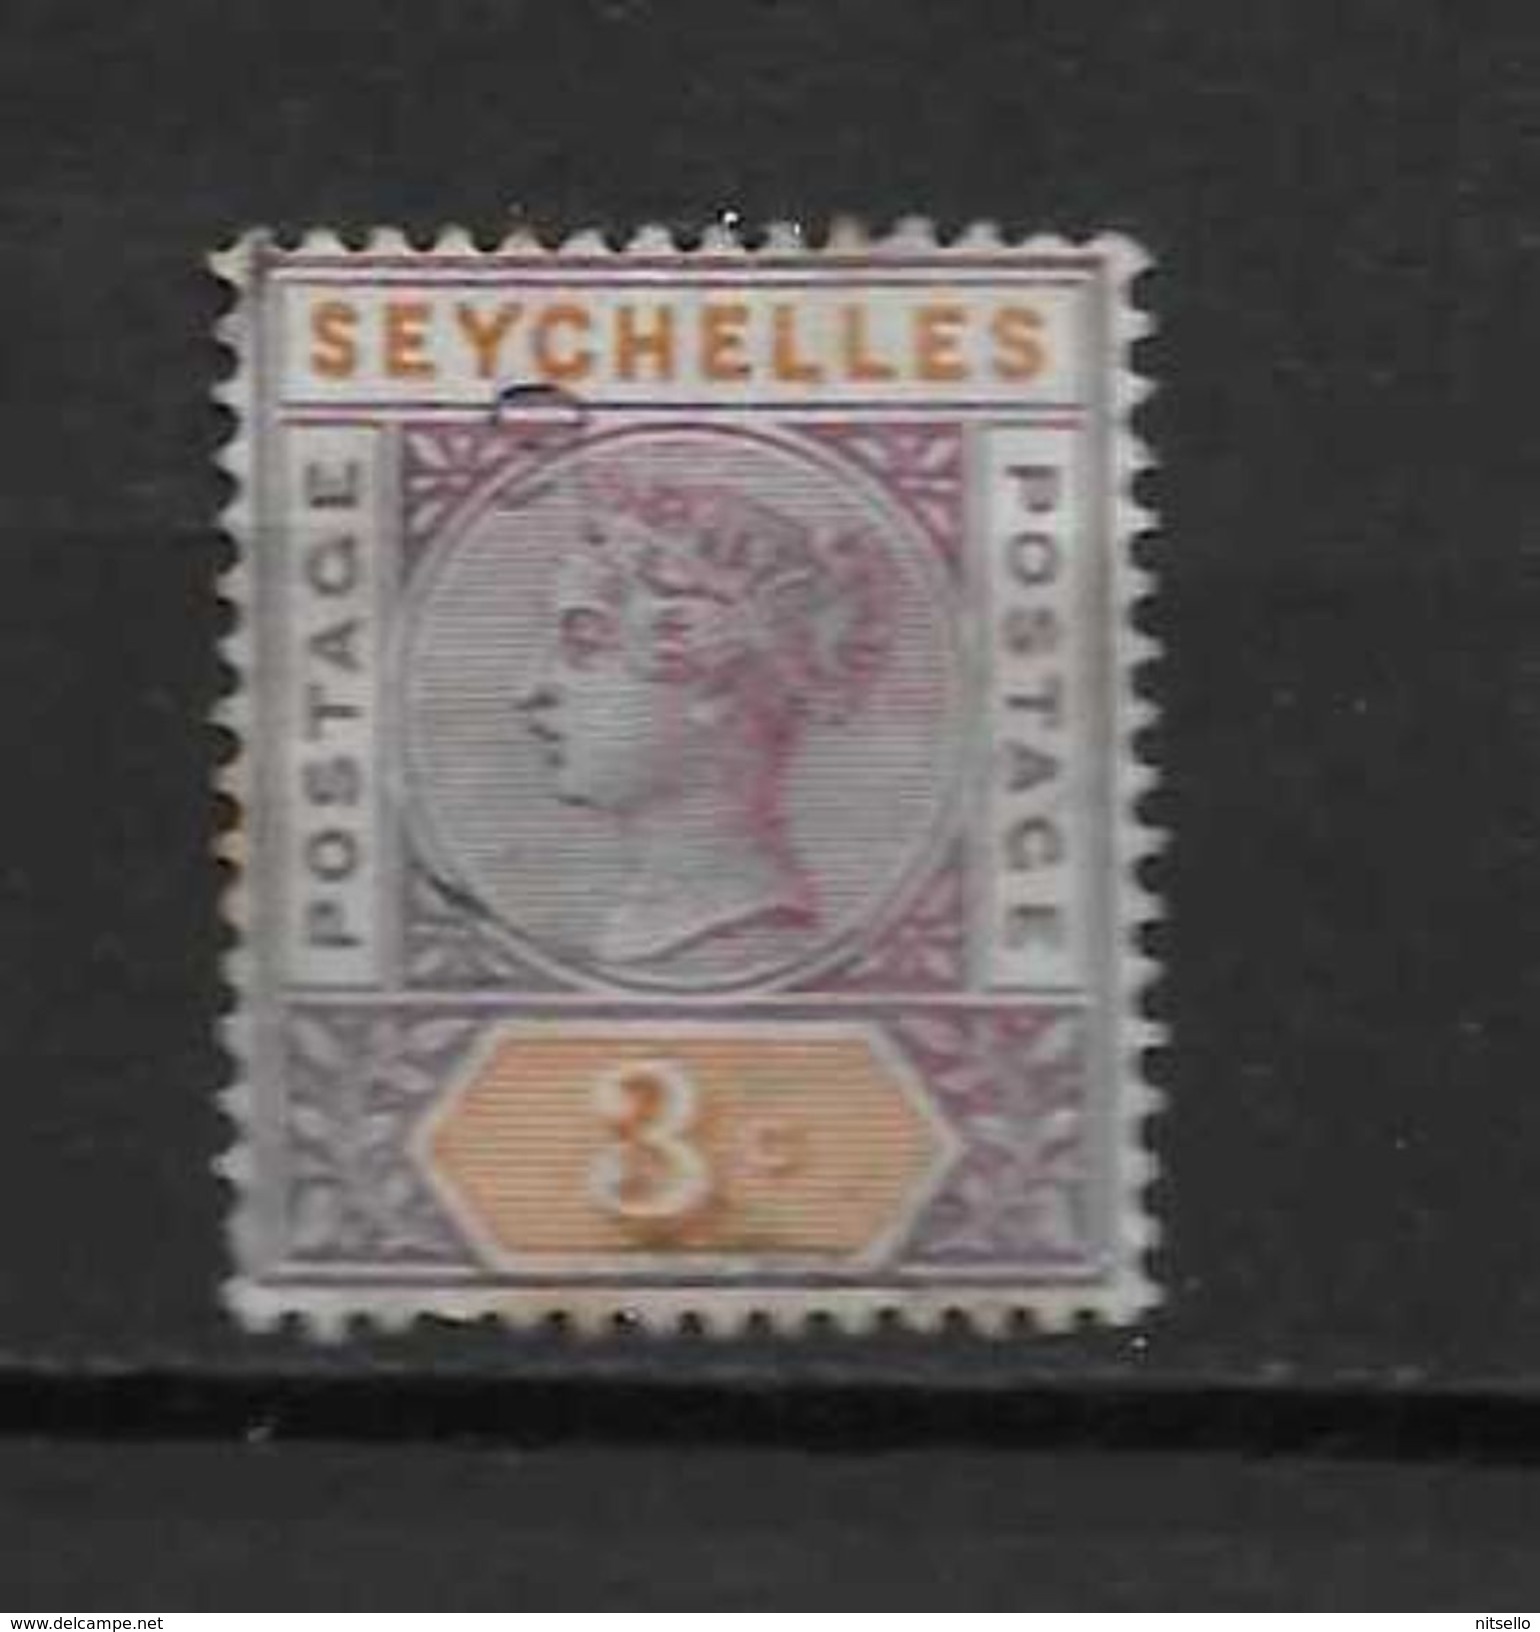 LOTE 1414  ///   SEYCHELLES   USADO - Seychelles (...-1976)